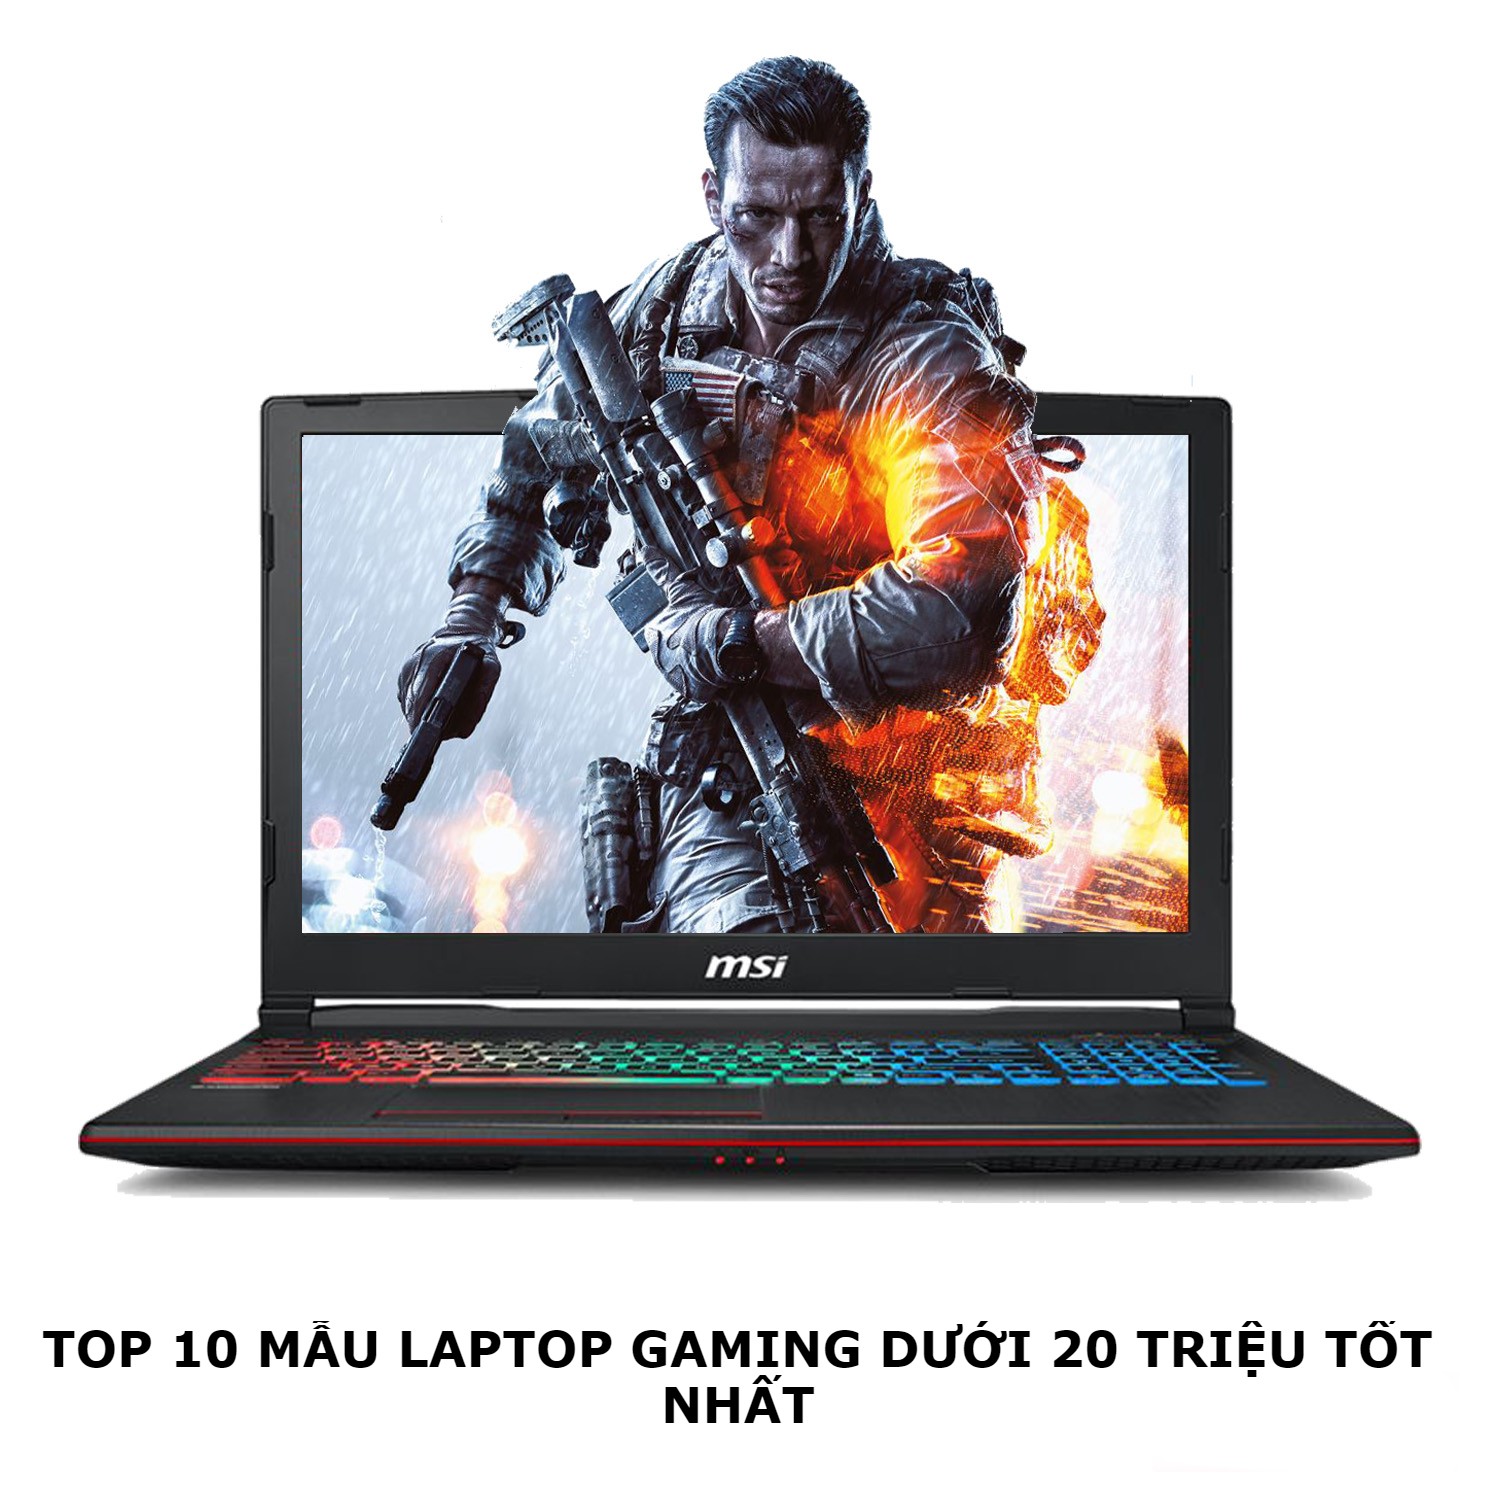 10 Laptop Cũ Gaming Dưới 20 Triệu Tốt Nhất 2022